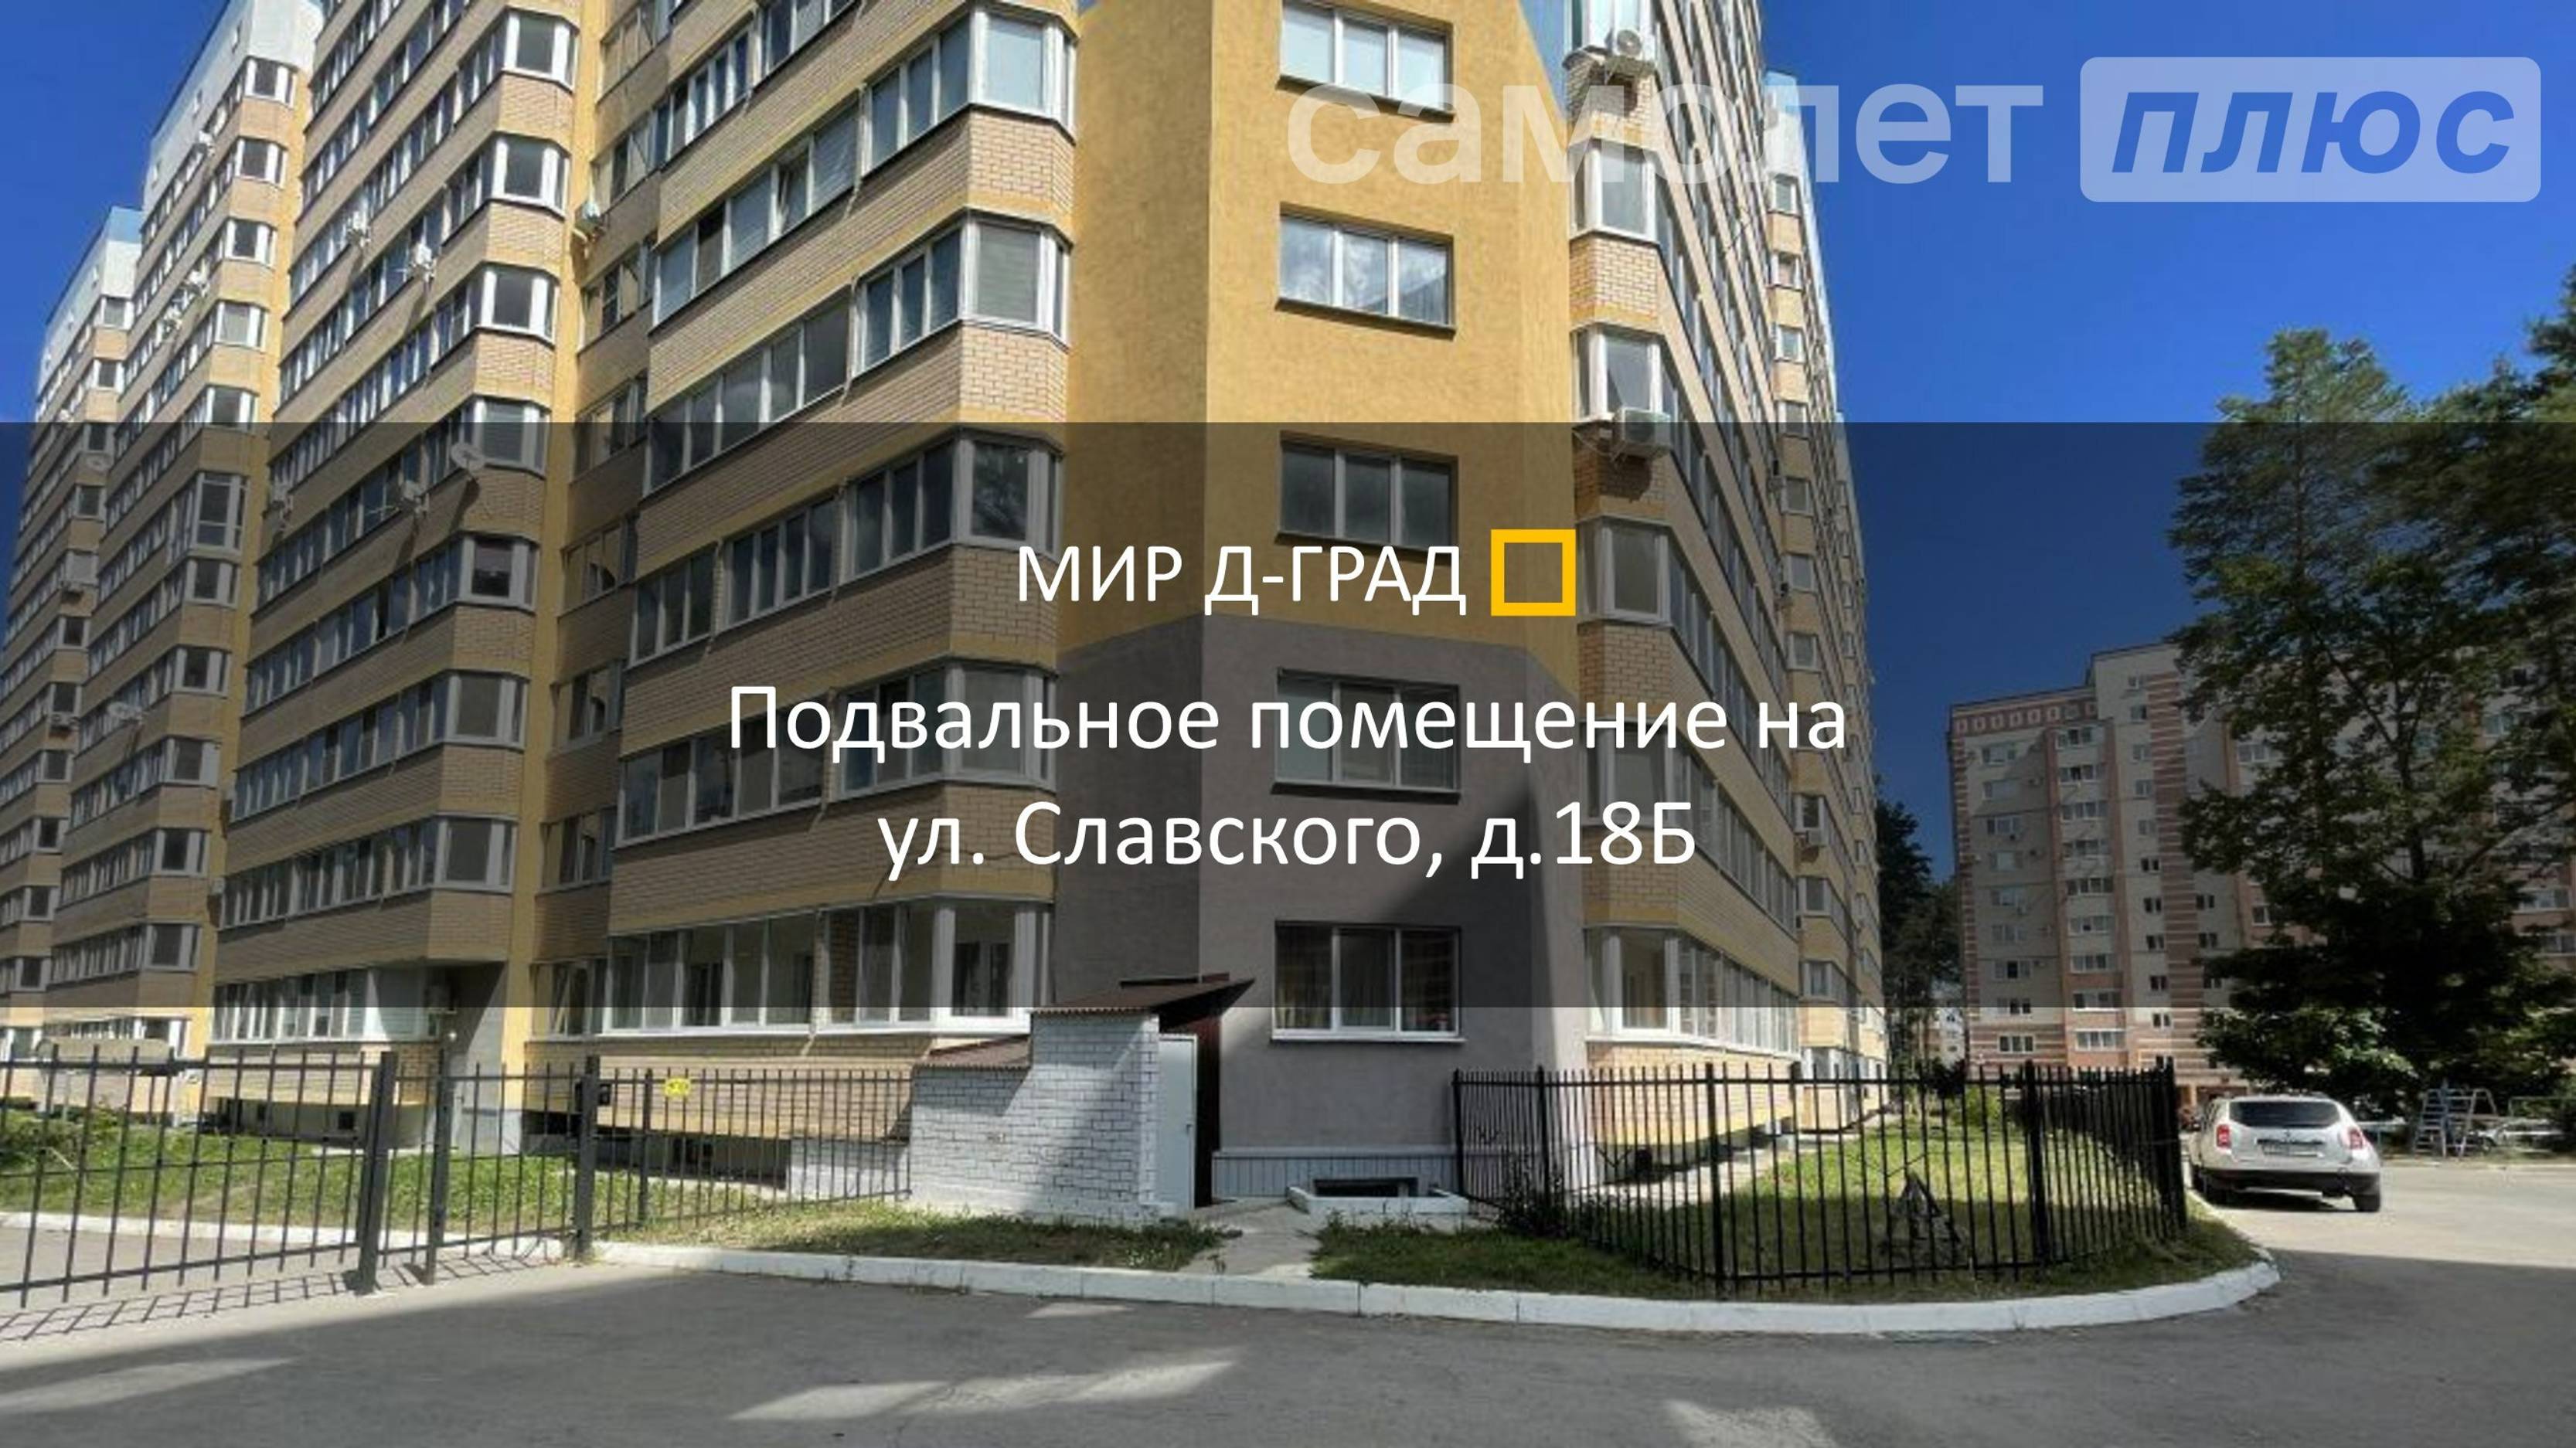 Подвальное помещение 346,4 м² на ул. Славского, д. 18Б, г. Димитровград, Ульяновская область